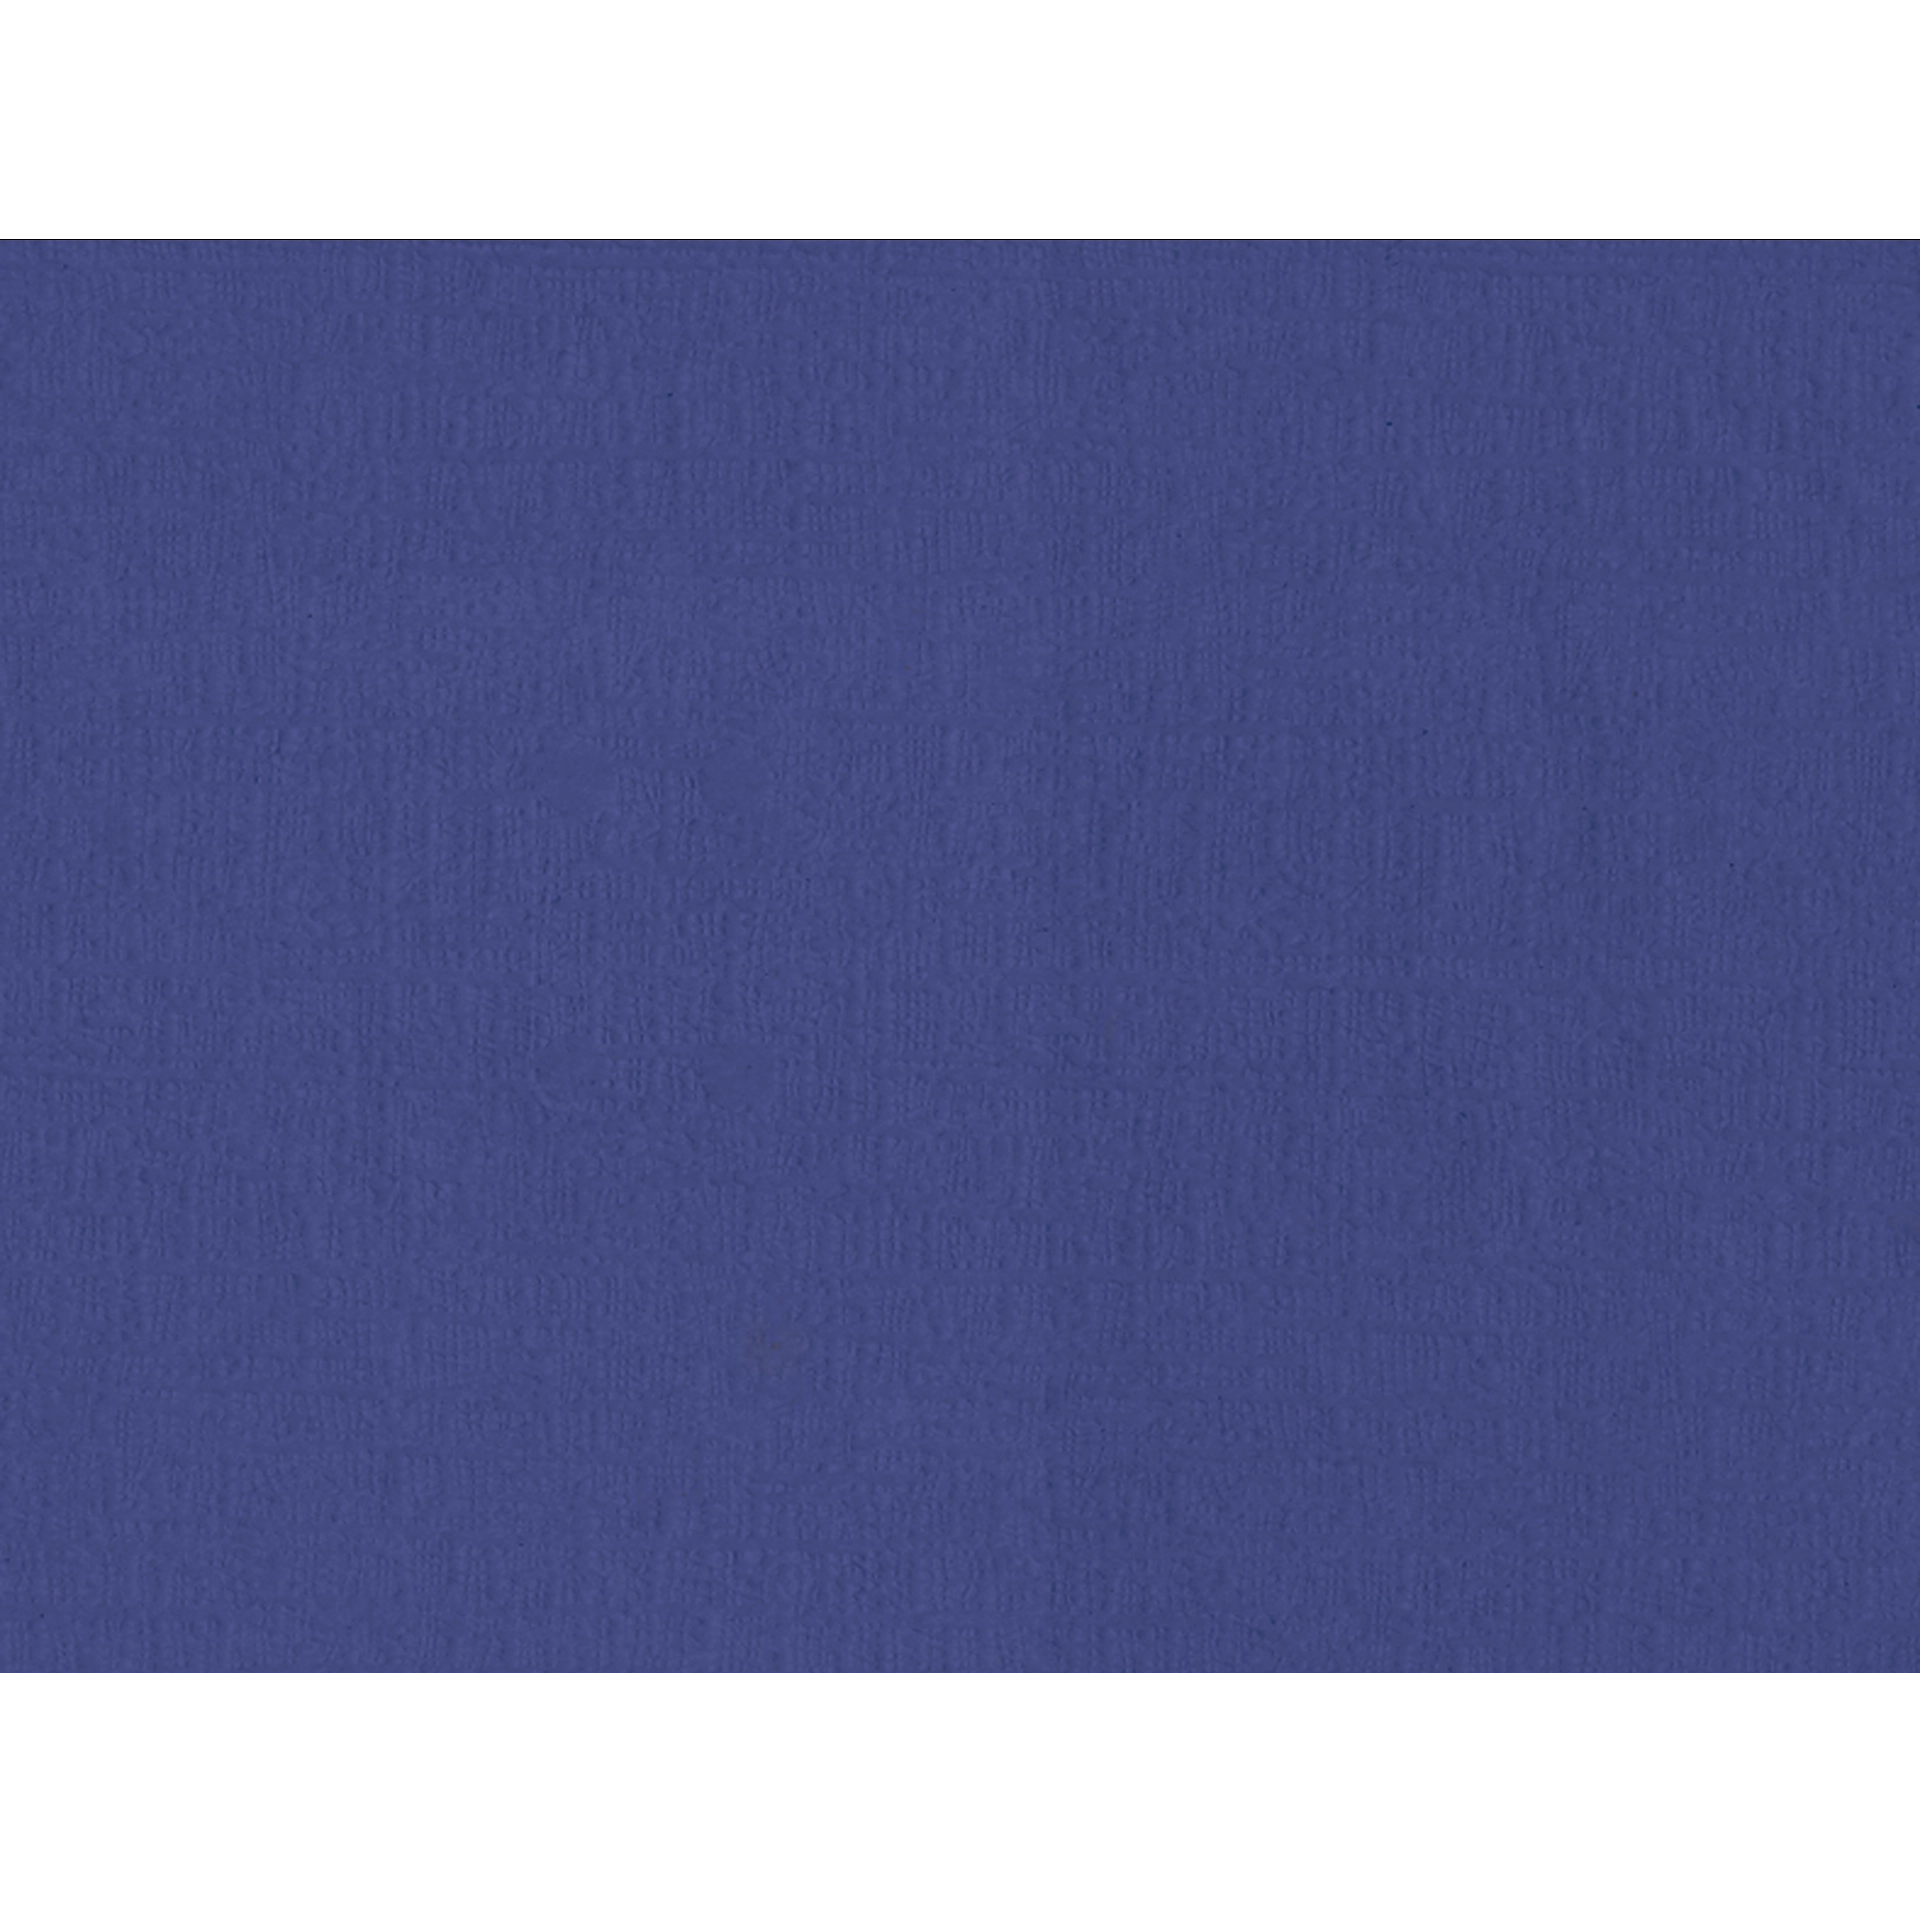 Tovaglietta | Pavia carta 45 g/m² | blu scuro 29,5x39,5 cm 